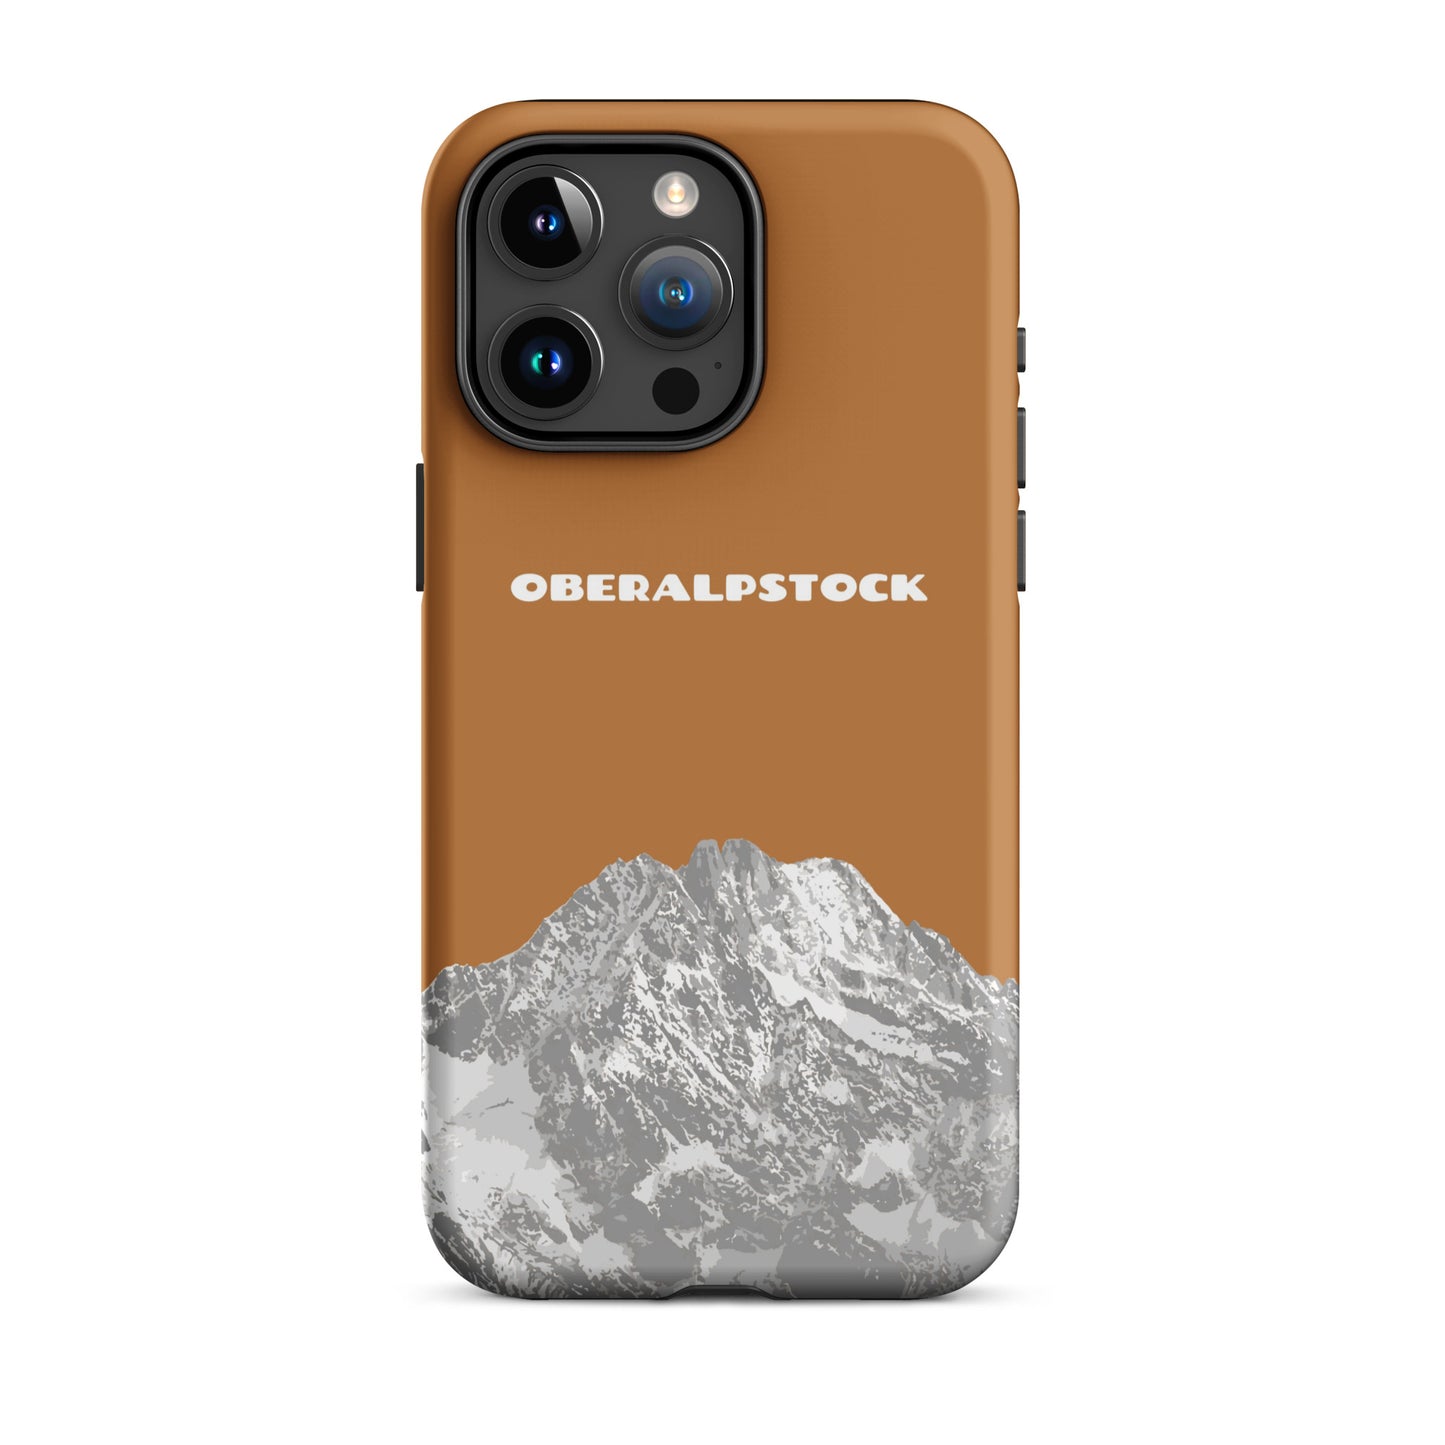 iPhone Case - Oberalpstock - Kupfer